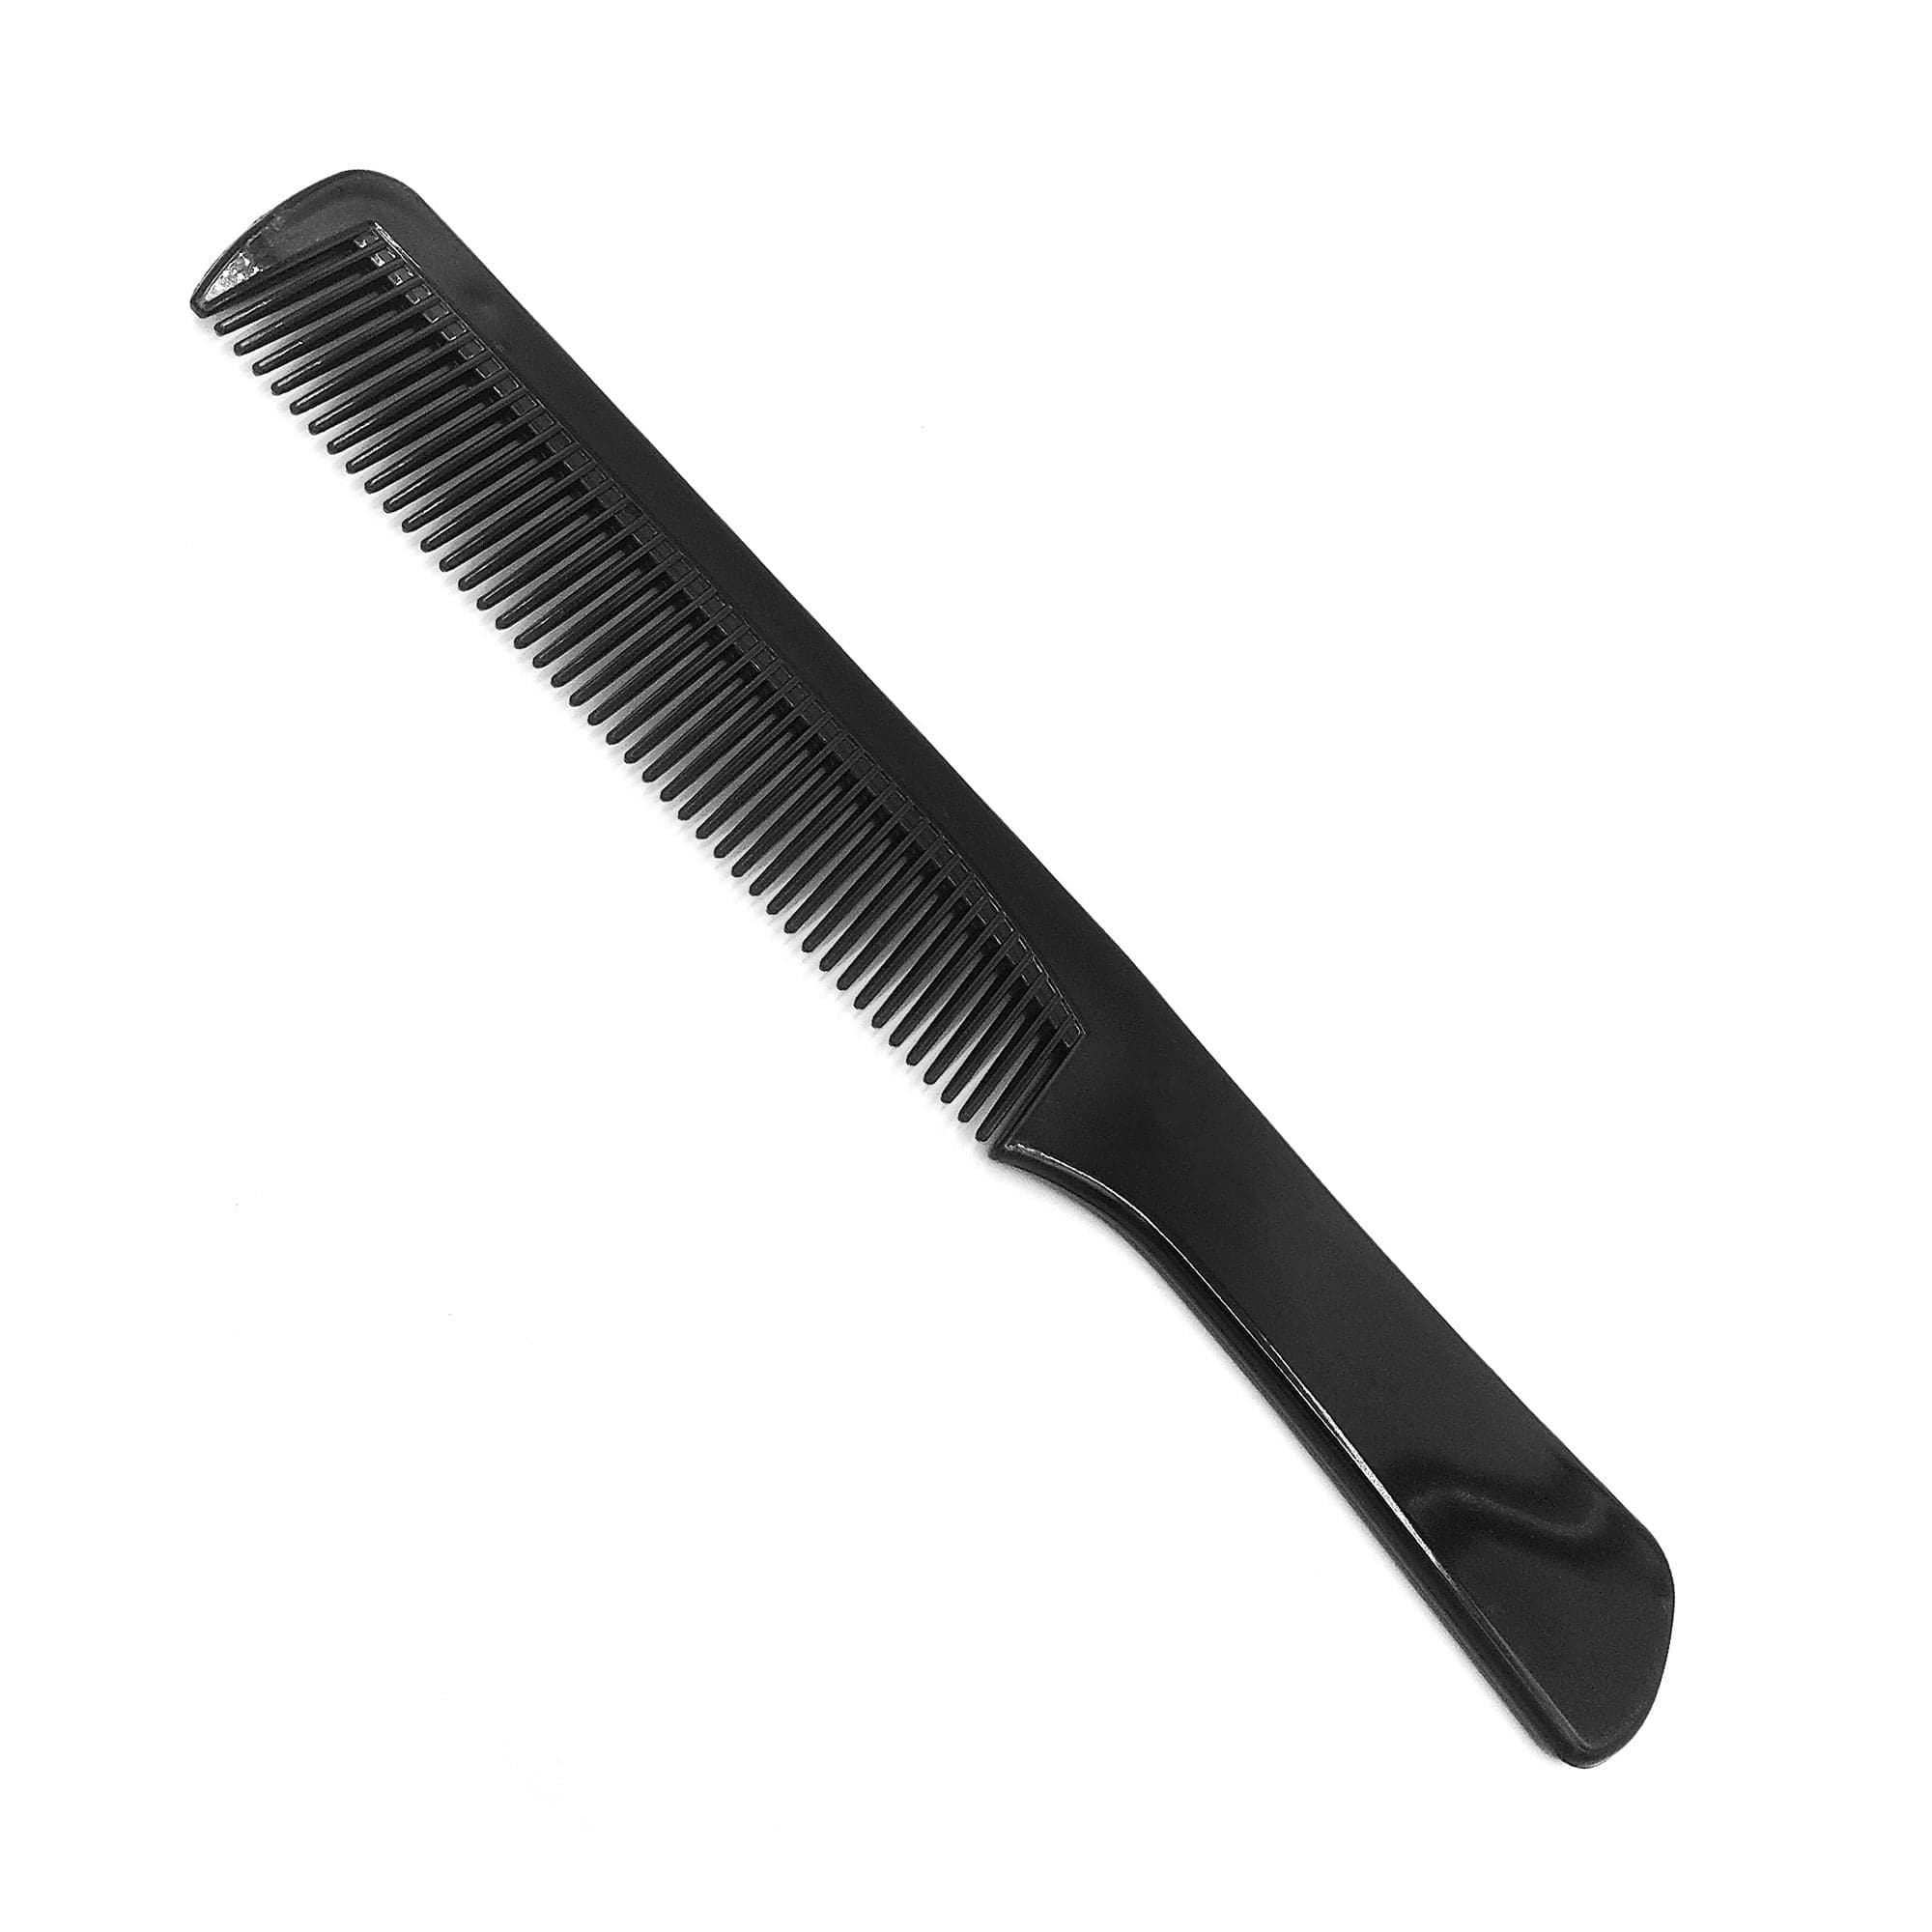 Gabri - Detangler Comb Flat Grip Handle No.2310  20cm